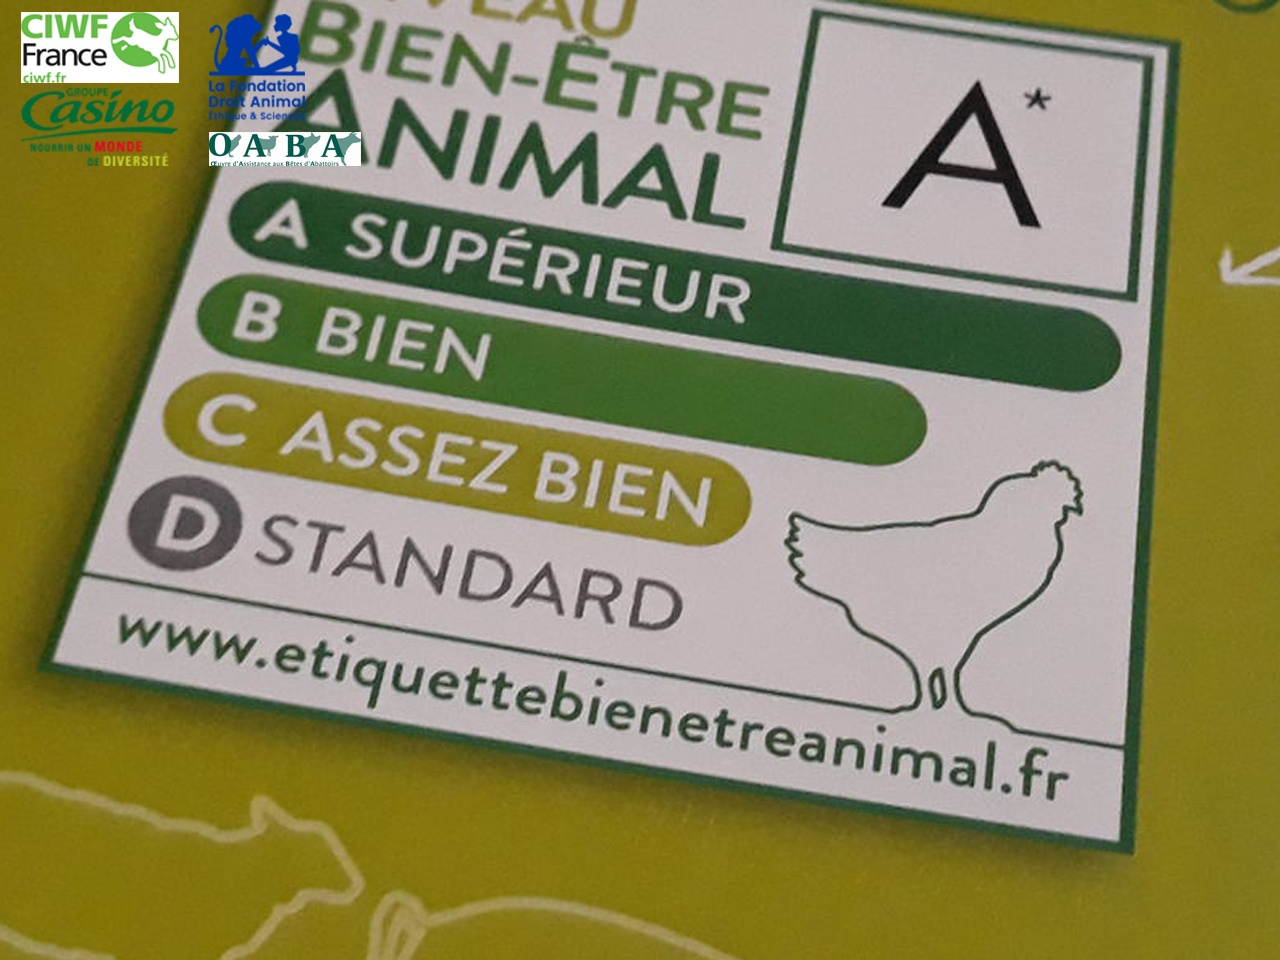 Le groupe Casino et trois organisations de protection animale (CIWF, LFDA et OABA) lancent le premier étiquetage sur le bien-être animal en France